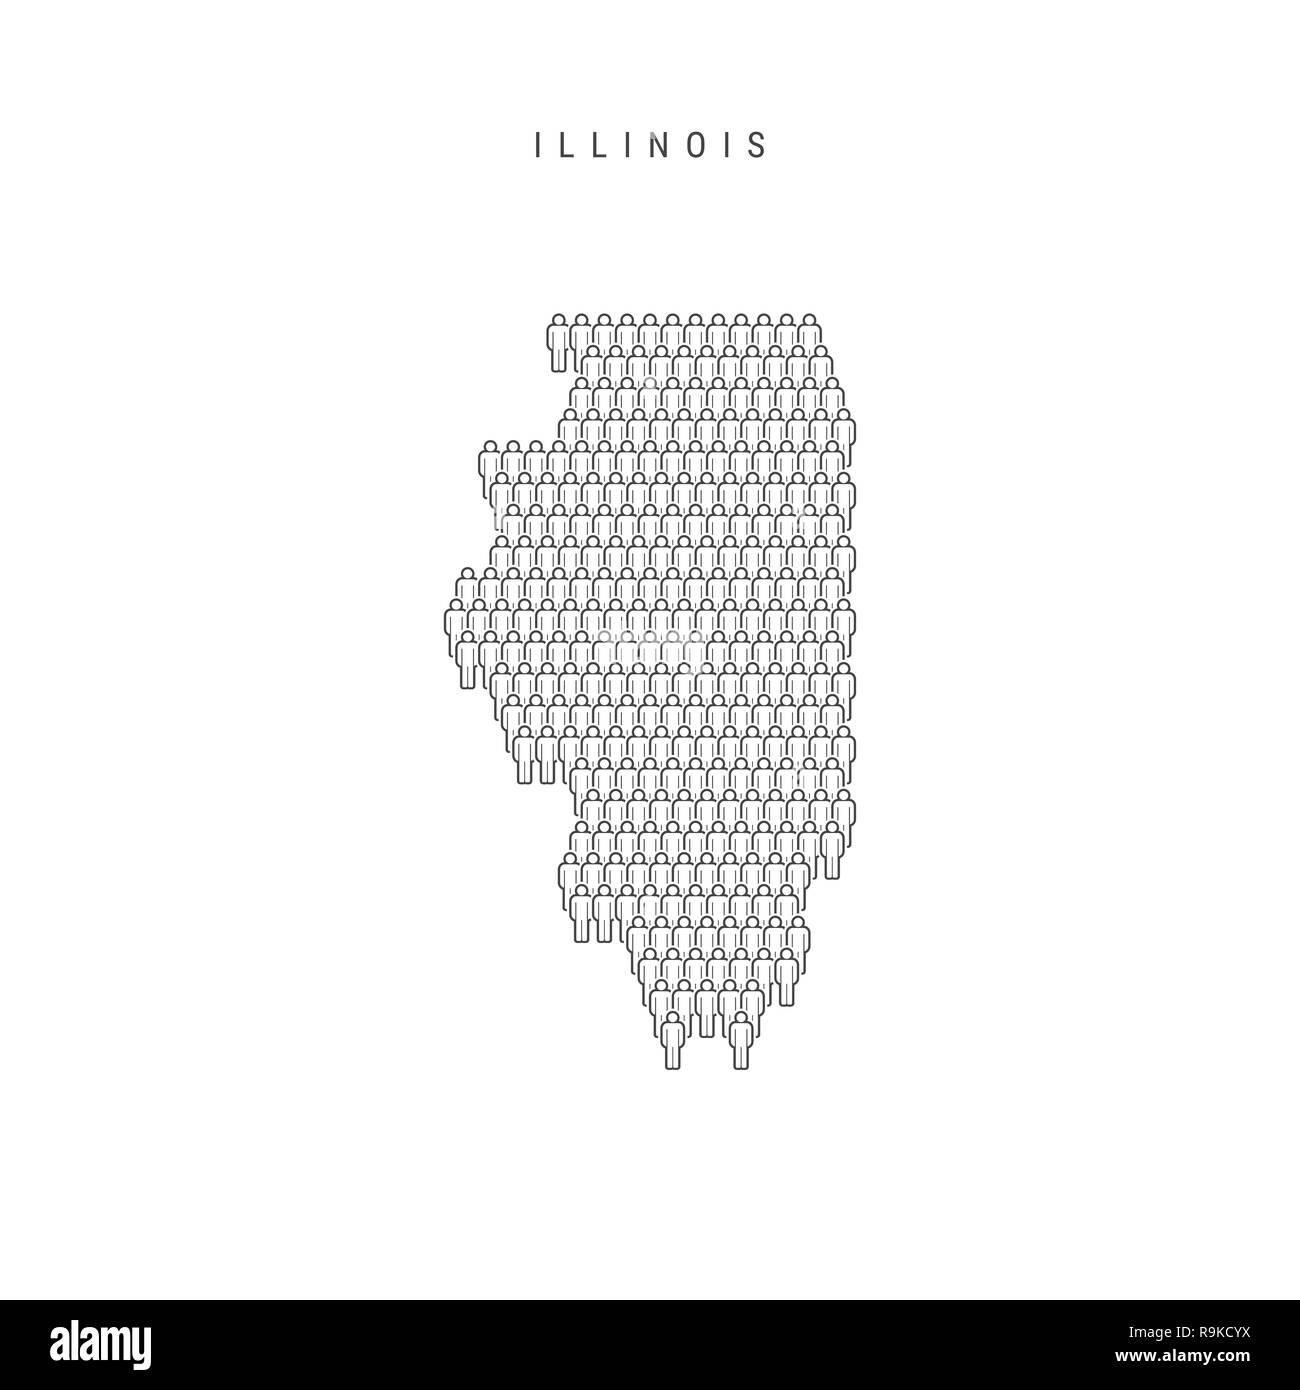 Leute Karte von Illinois, US-Staat. Stilisierte Silhouette, Leute in der Form einer Karte von Illinois. Illinois Bevölkerung. Abbildung isoliert auf W Stockfoto